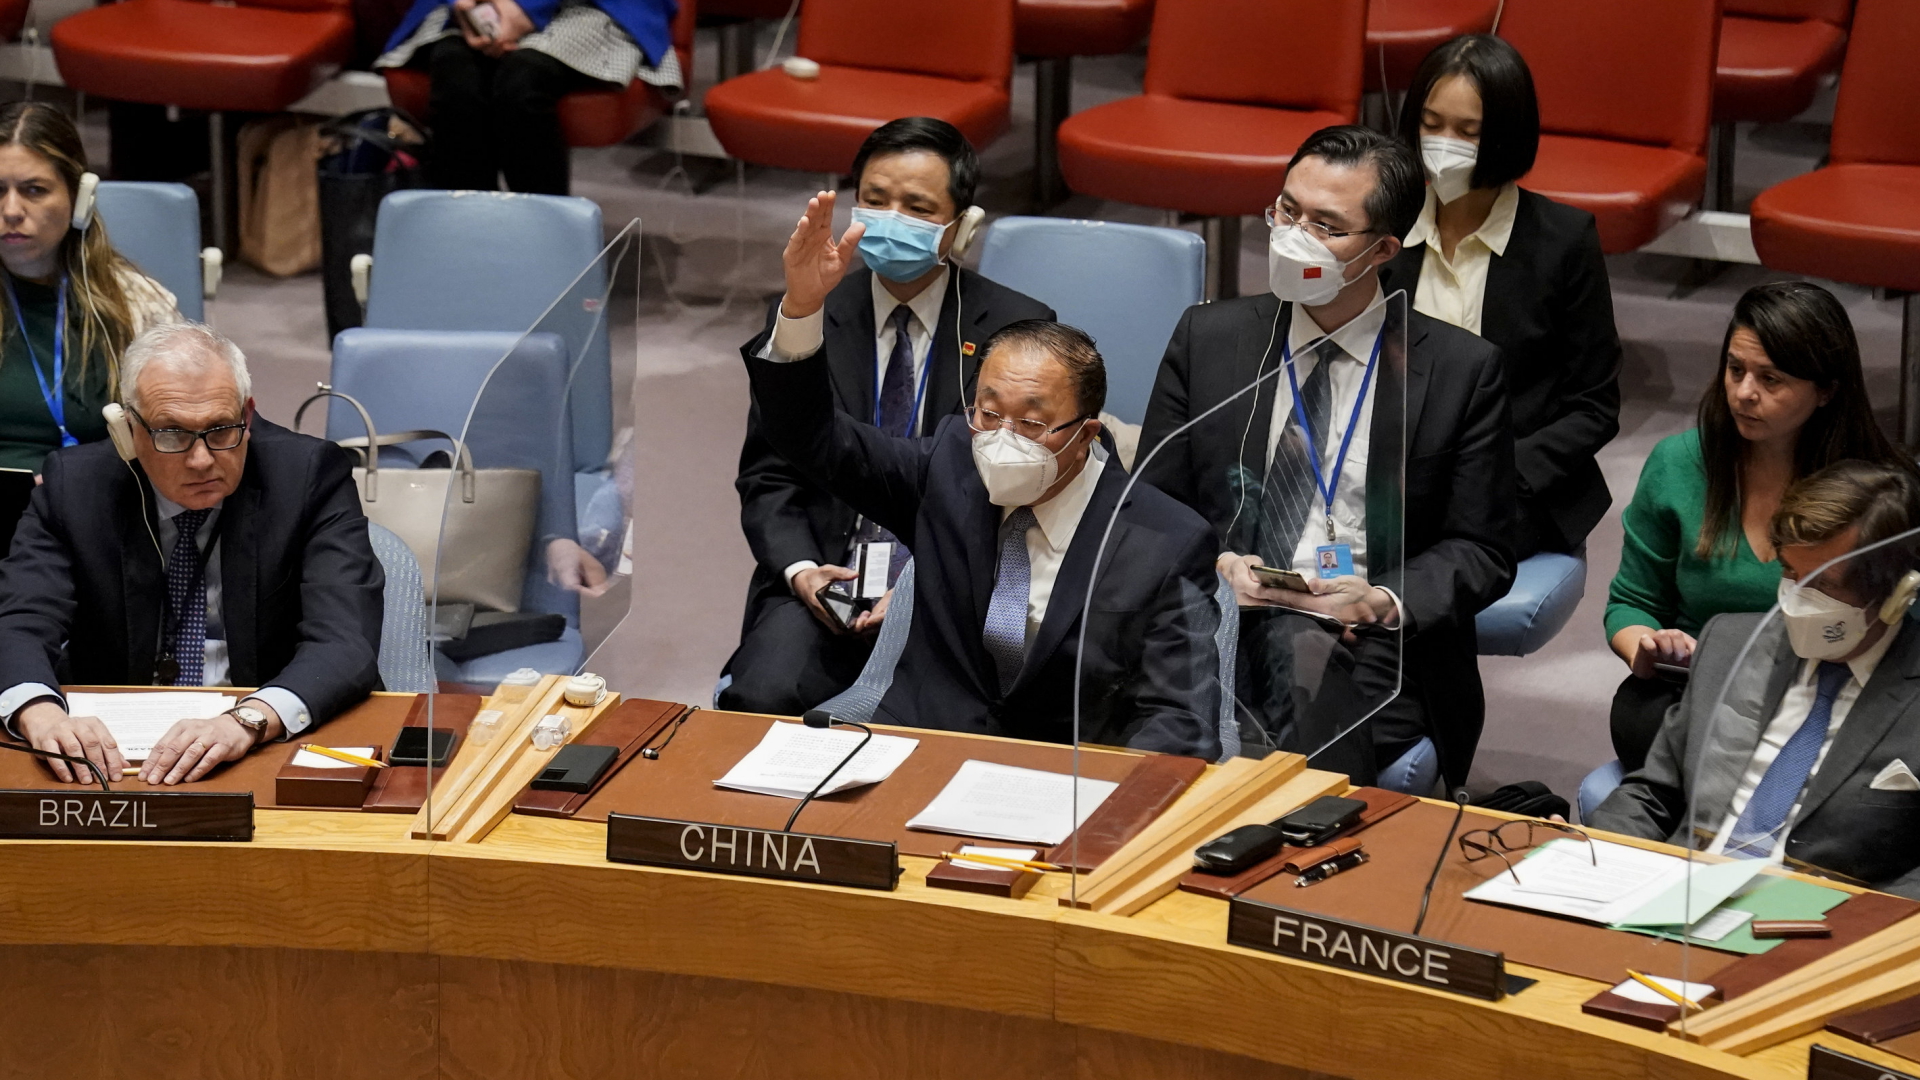 Consiglio di sicurezza dell’Onu: la Russia non risolve